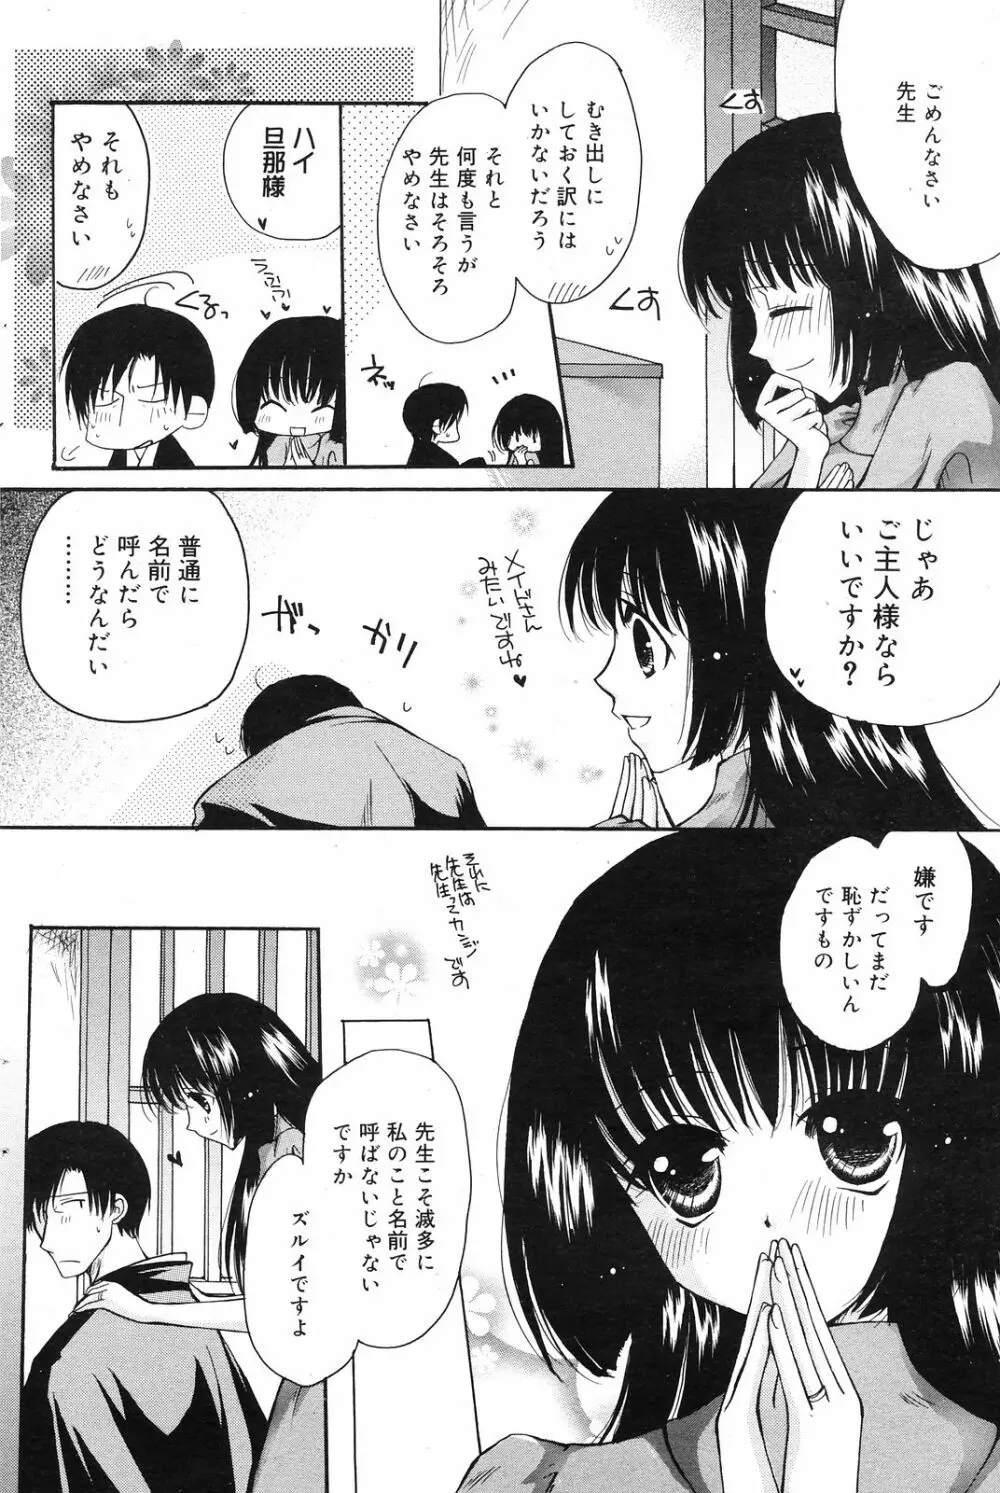 Manga Bangaichi 2008-12 120ページ